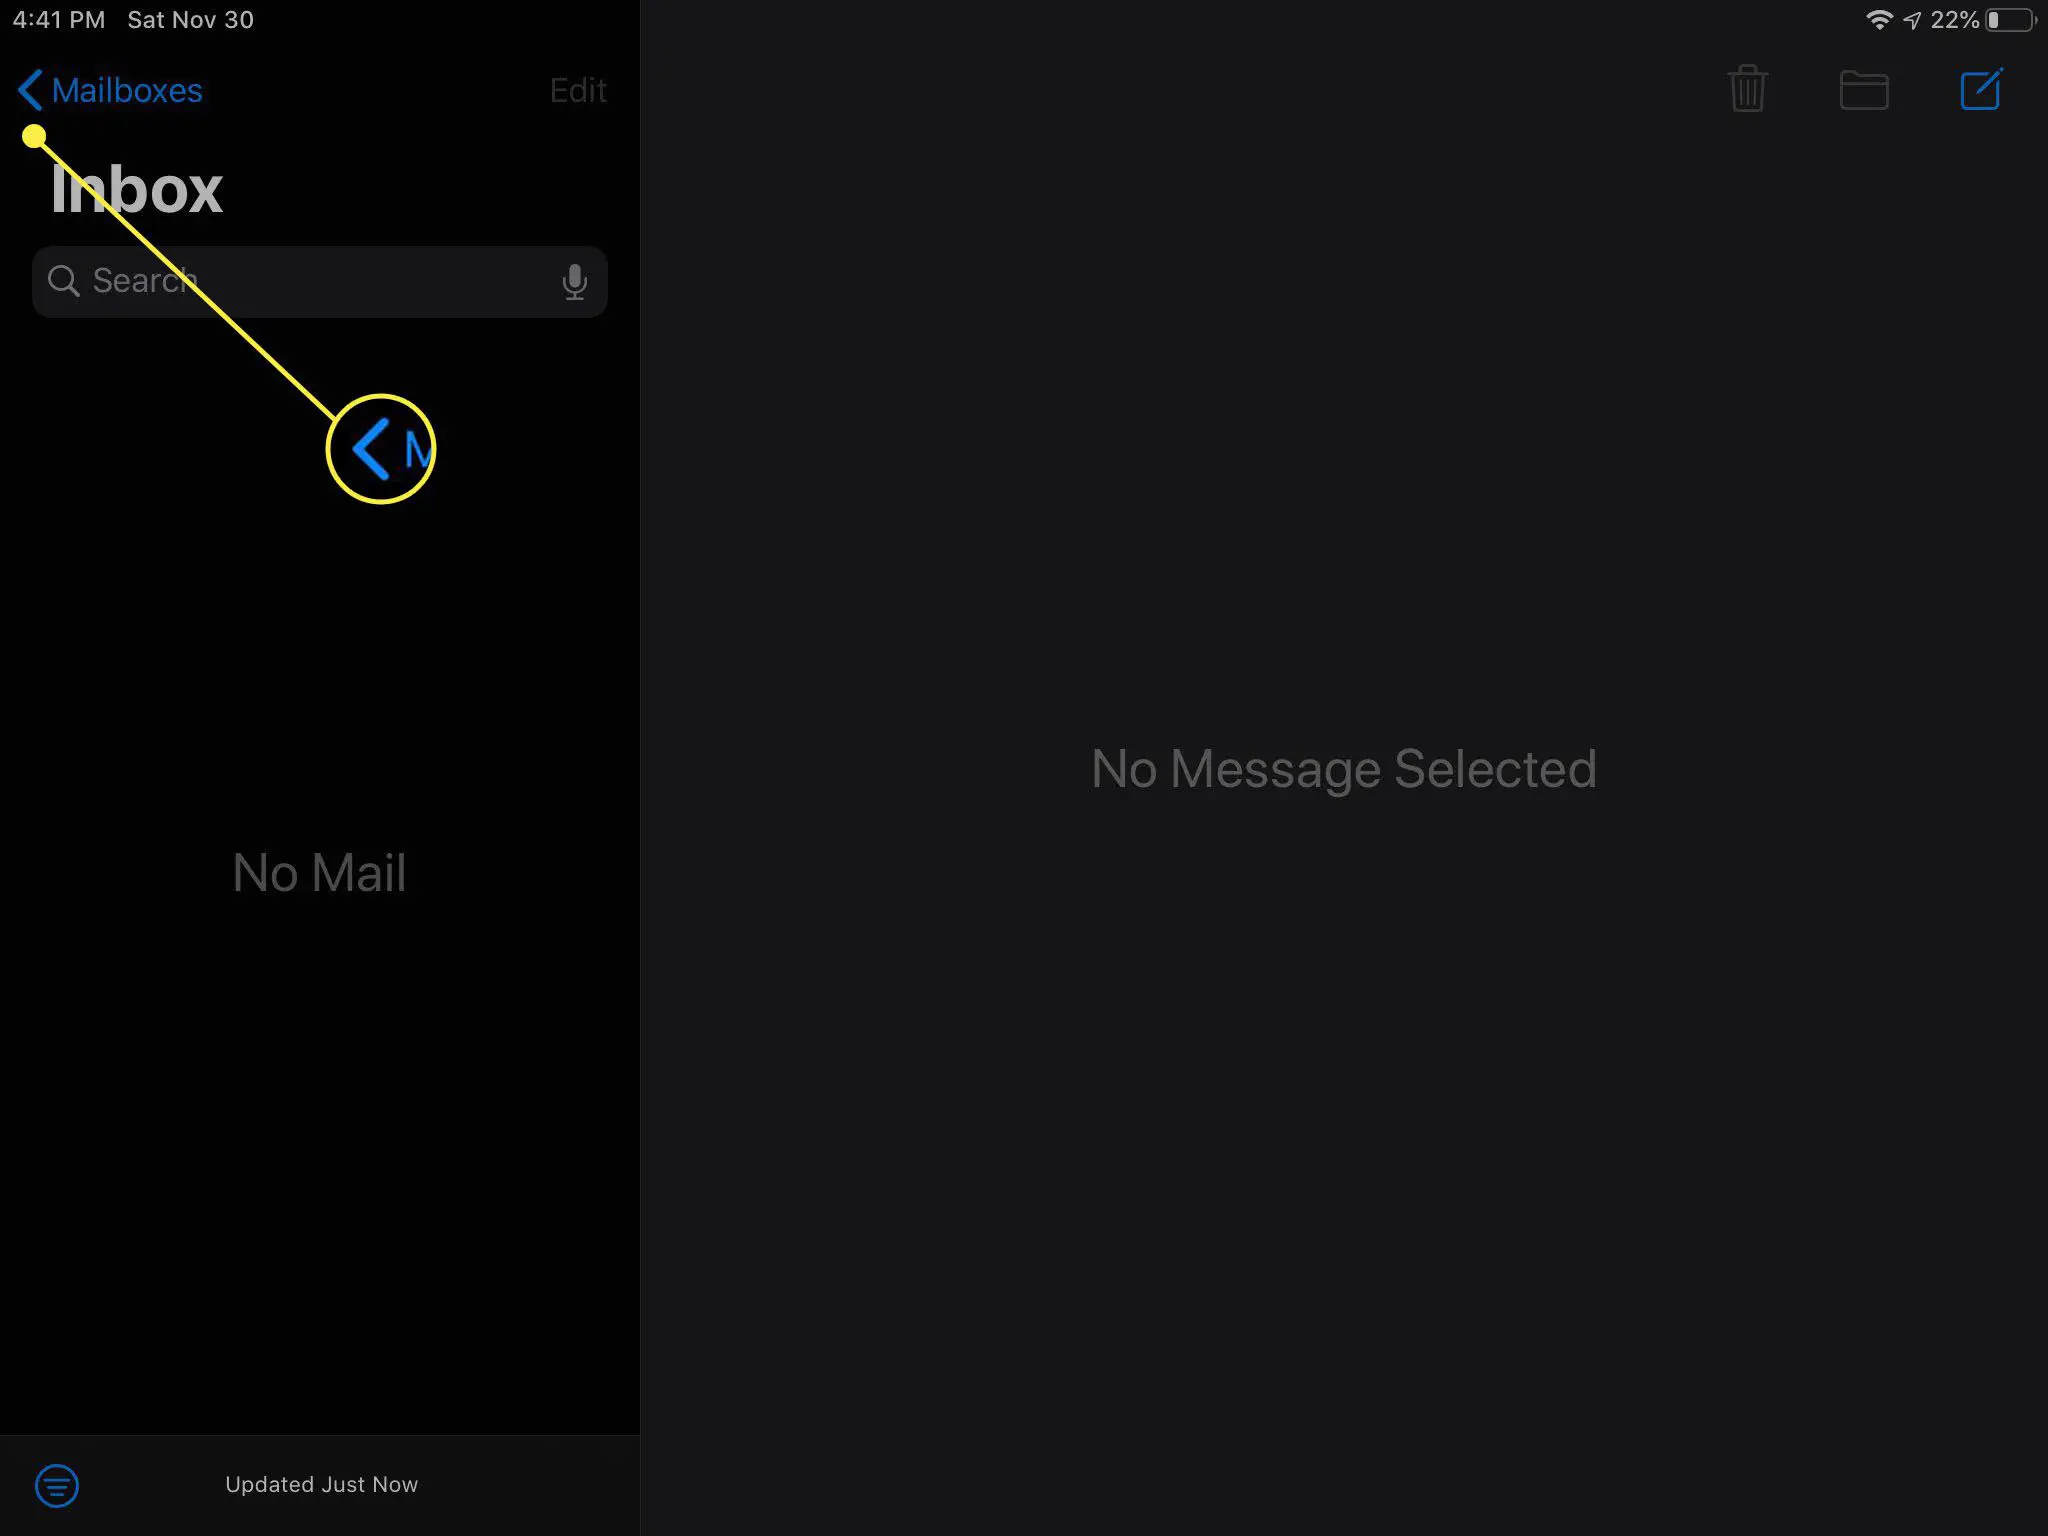 Caixa de entrada do Gmail no aplicativo iOS Mail.